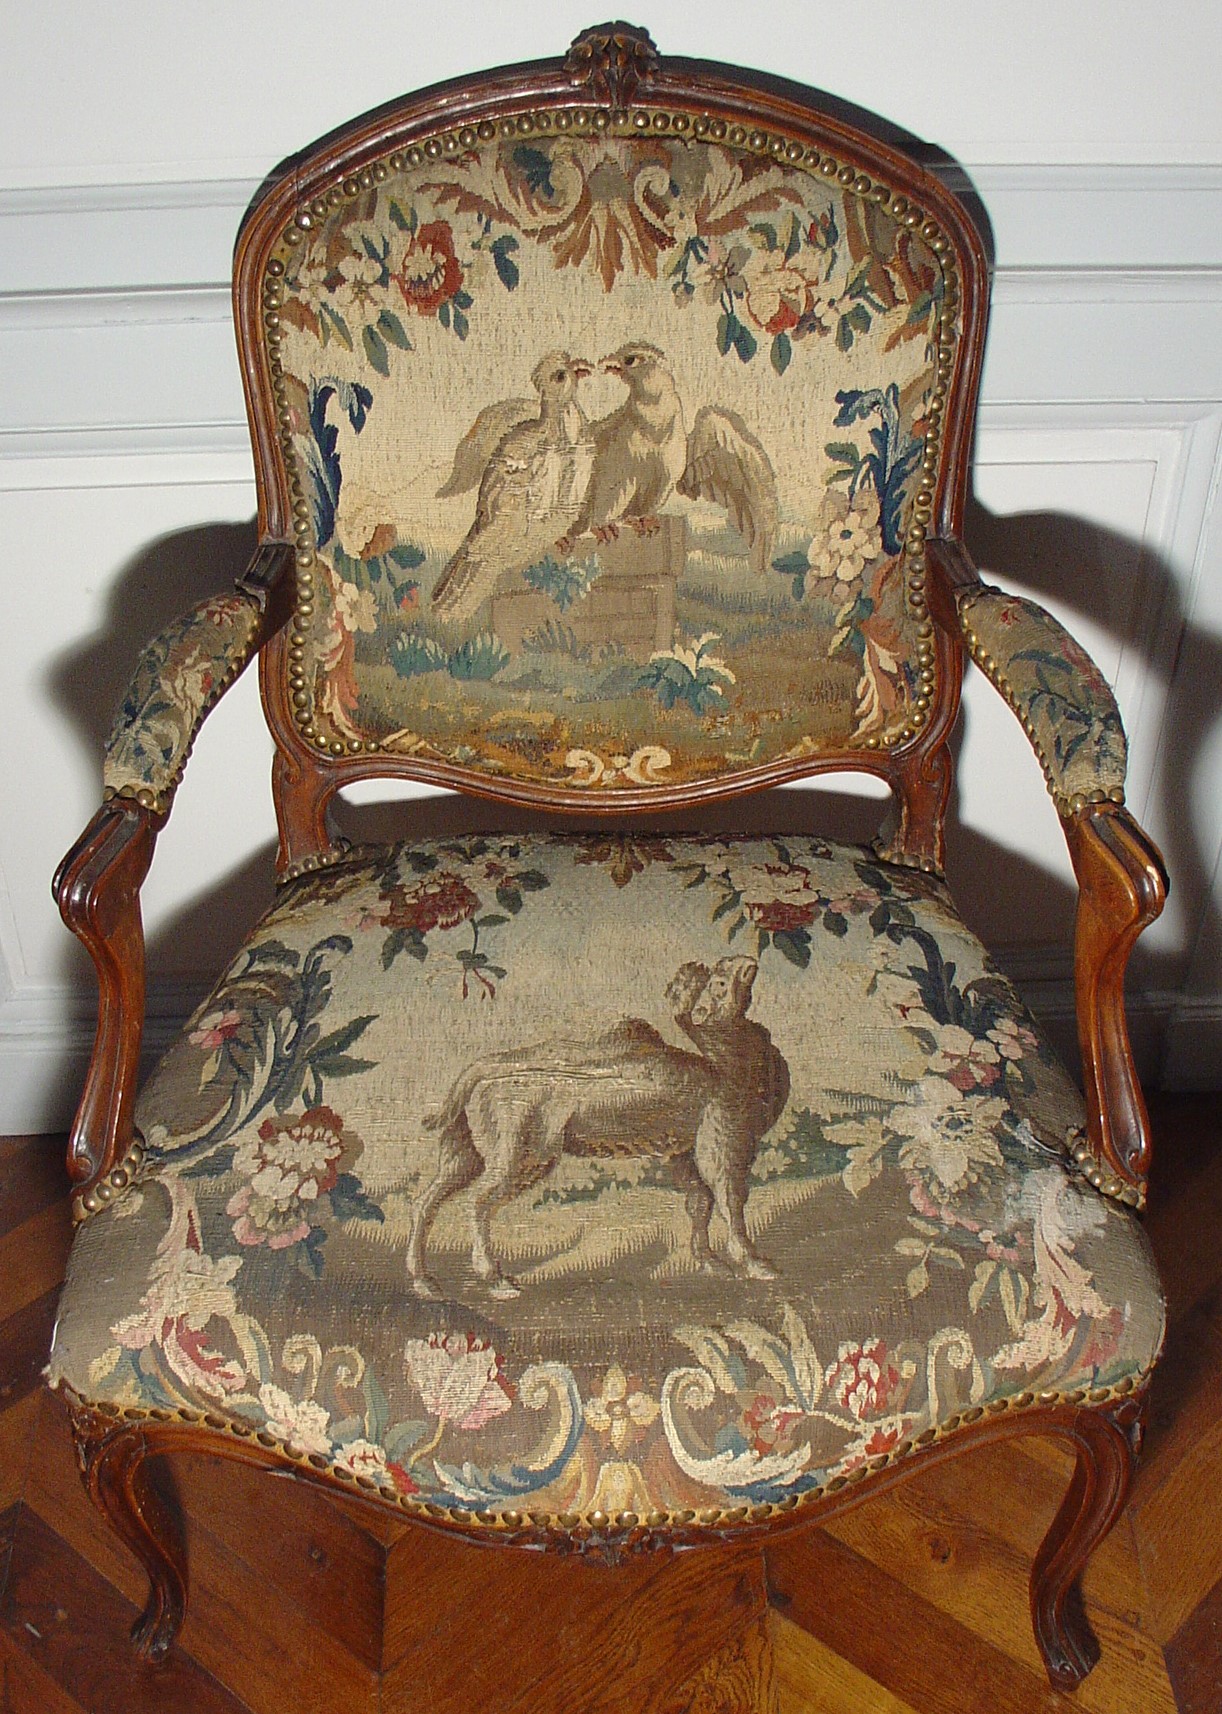 Fauteuil à la reine, manufacture d’Aubusson, milieu du XVIIIe siècle, hêtre mouluré et sculpté et tapisserie, Inv. 2010.0.4.1